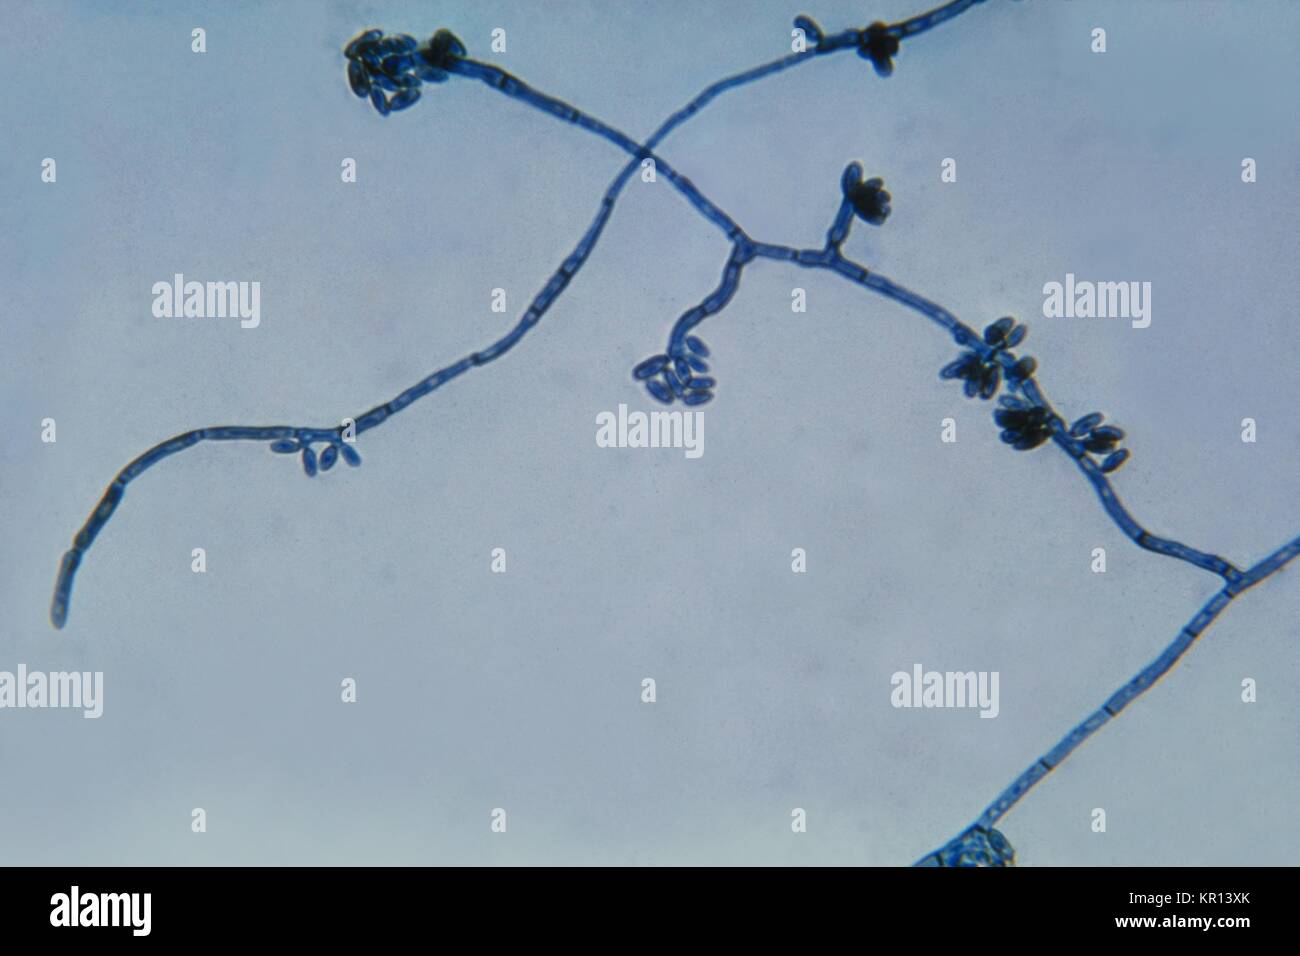 Dies ist ein photomicrograph des Pilzes Hortaea werneckii, der Erreger der Tinea Nigra, 1964. Tinea Nigra ist ein oberflächliches, asymptomatische Pilzinfektion des Stratum corneum der Haut und wird durch die schwarze Flecken auf den Handflächen oder Fußsohlen geprägt. Der Pilz lebt auf Pflanzen, Boden und Nahrungsmittel mit einem hohen Salzgehalt. Bild mit freundlicher Genehmigung von CDC/Dr. Lucille K. Georg. Stockfoto